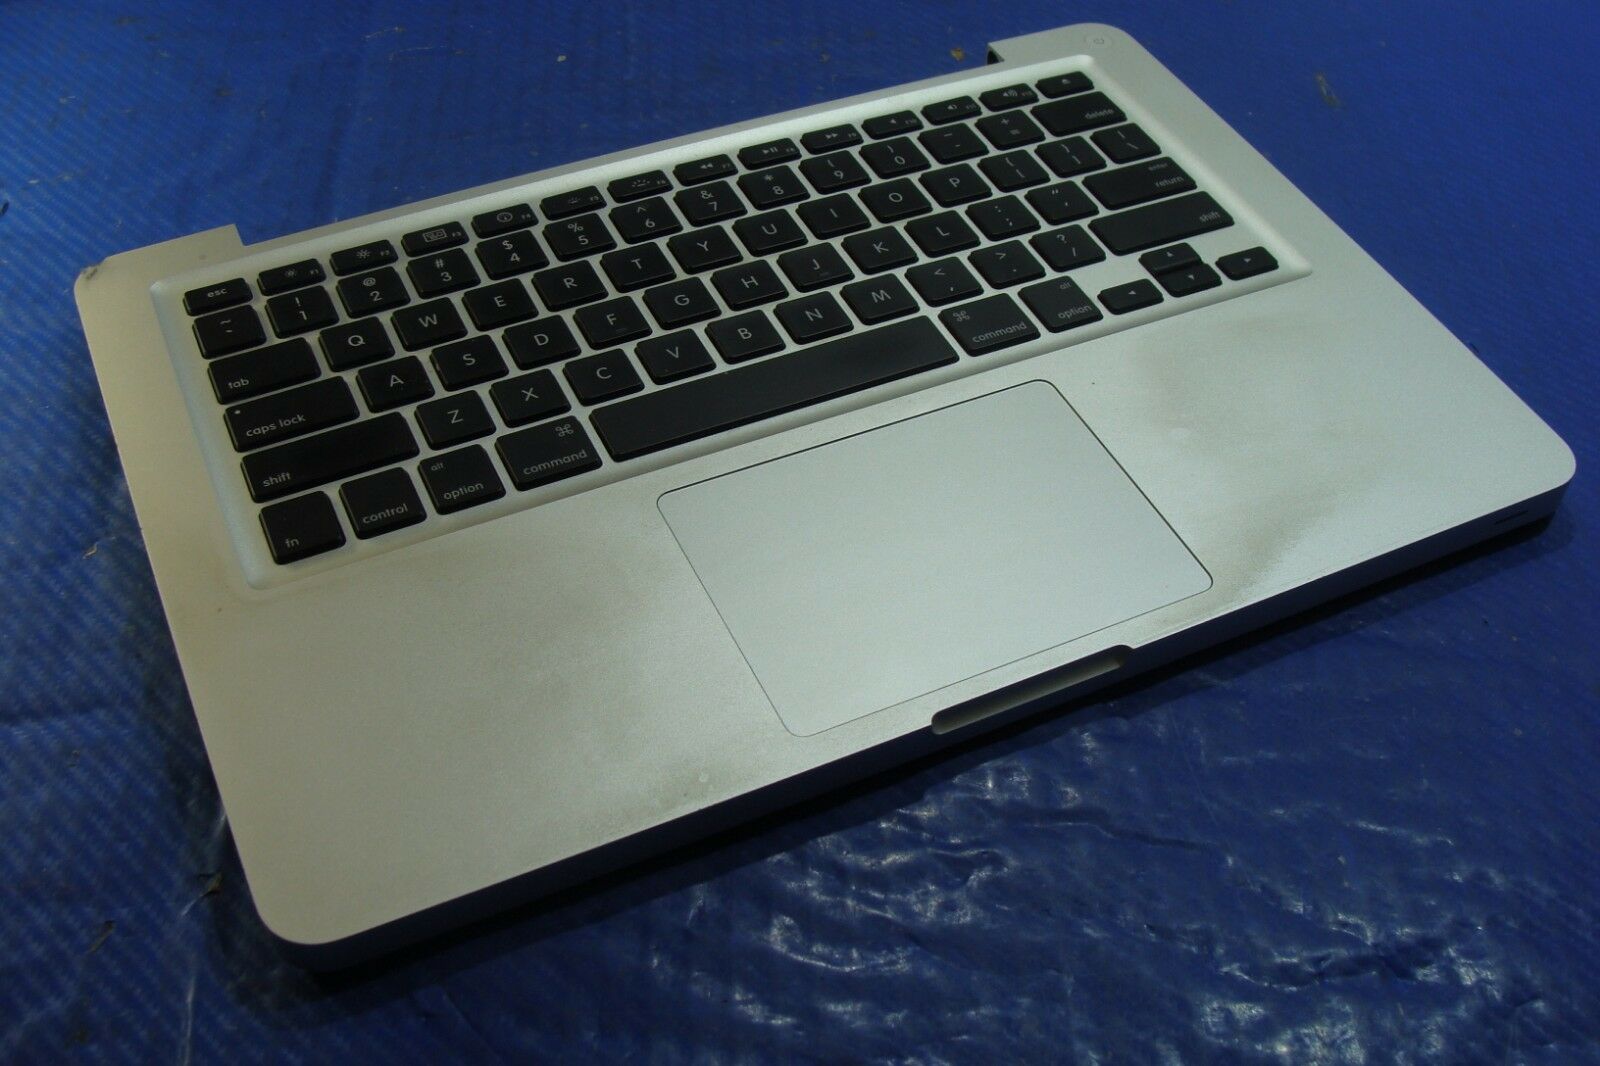 MacBook Pro A1278 MB991LL/A Mid 2009 13